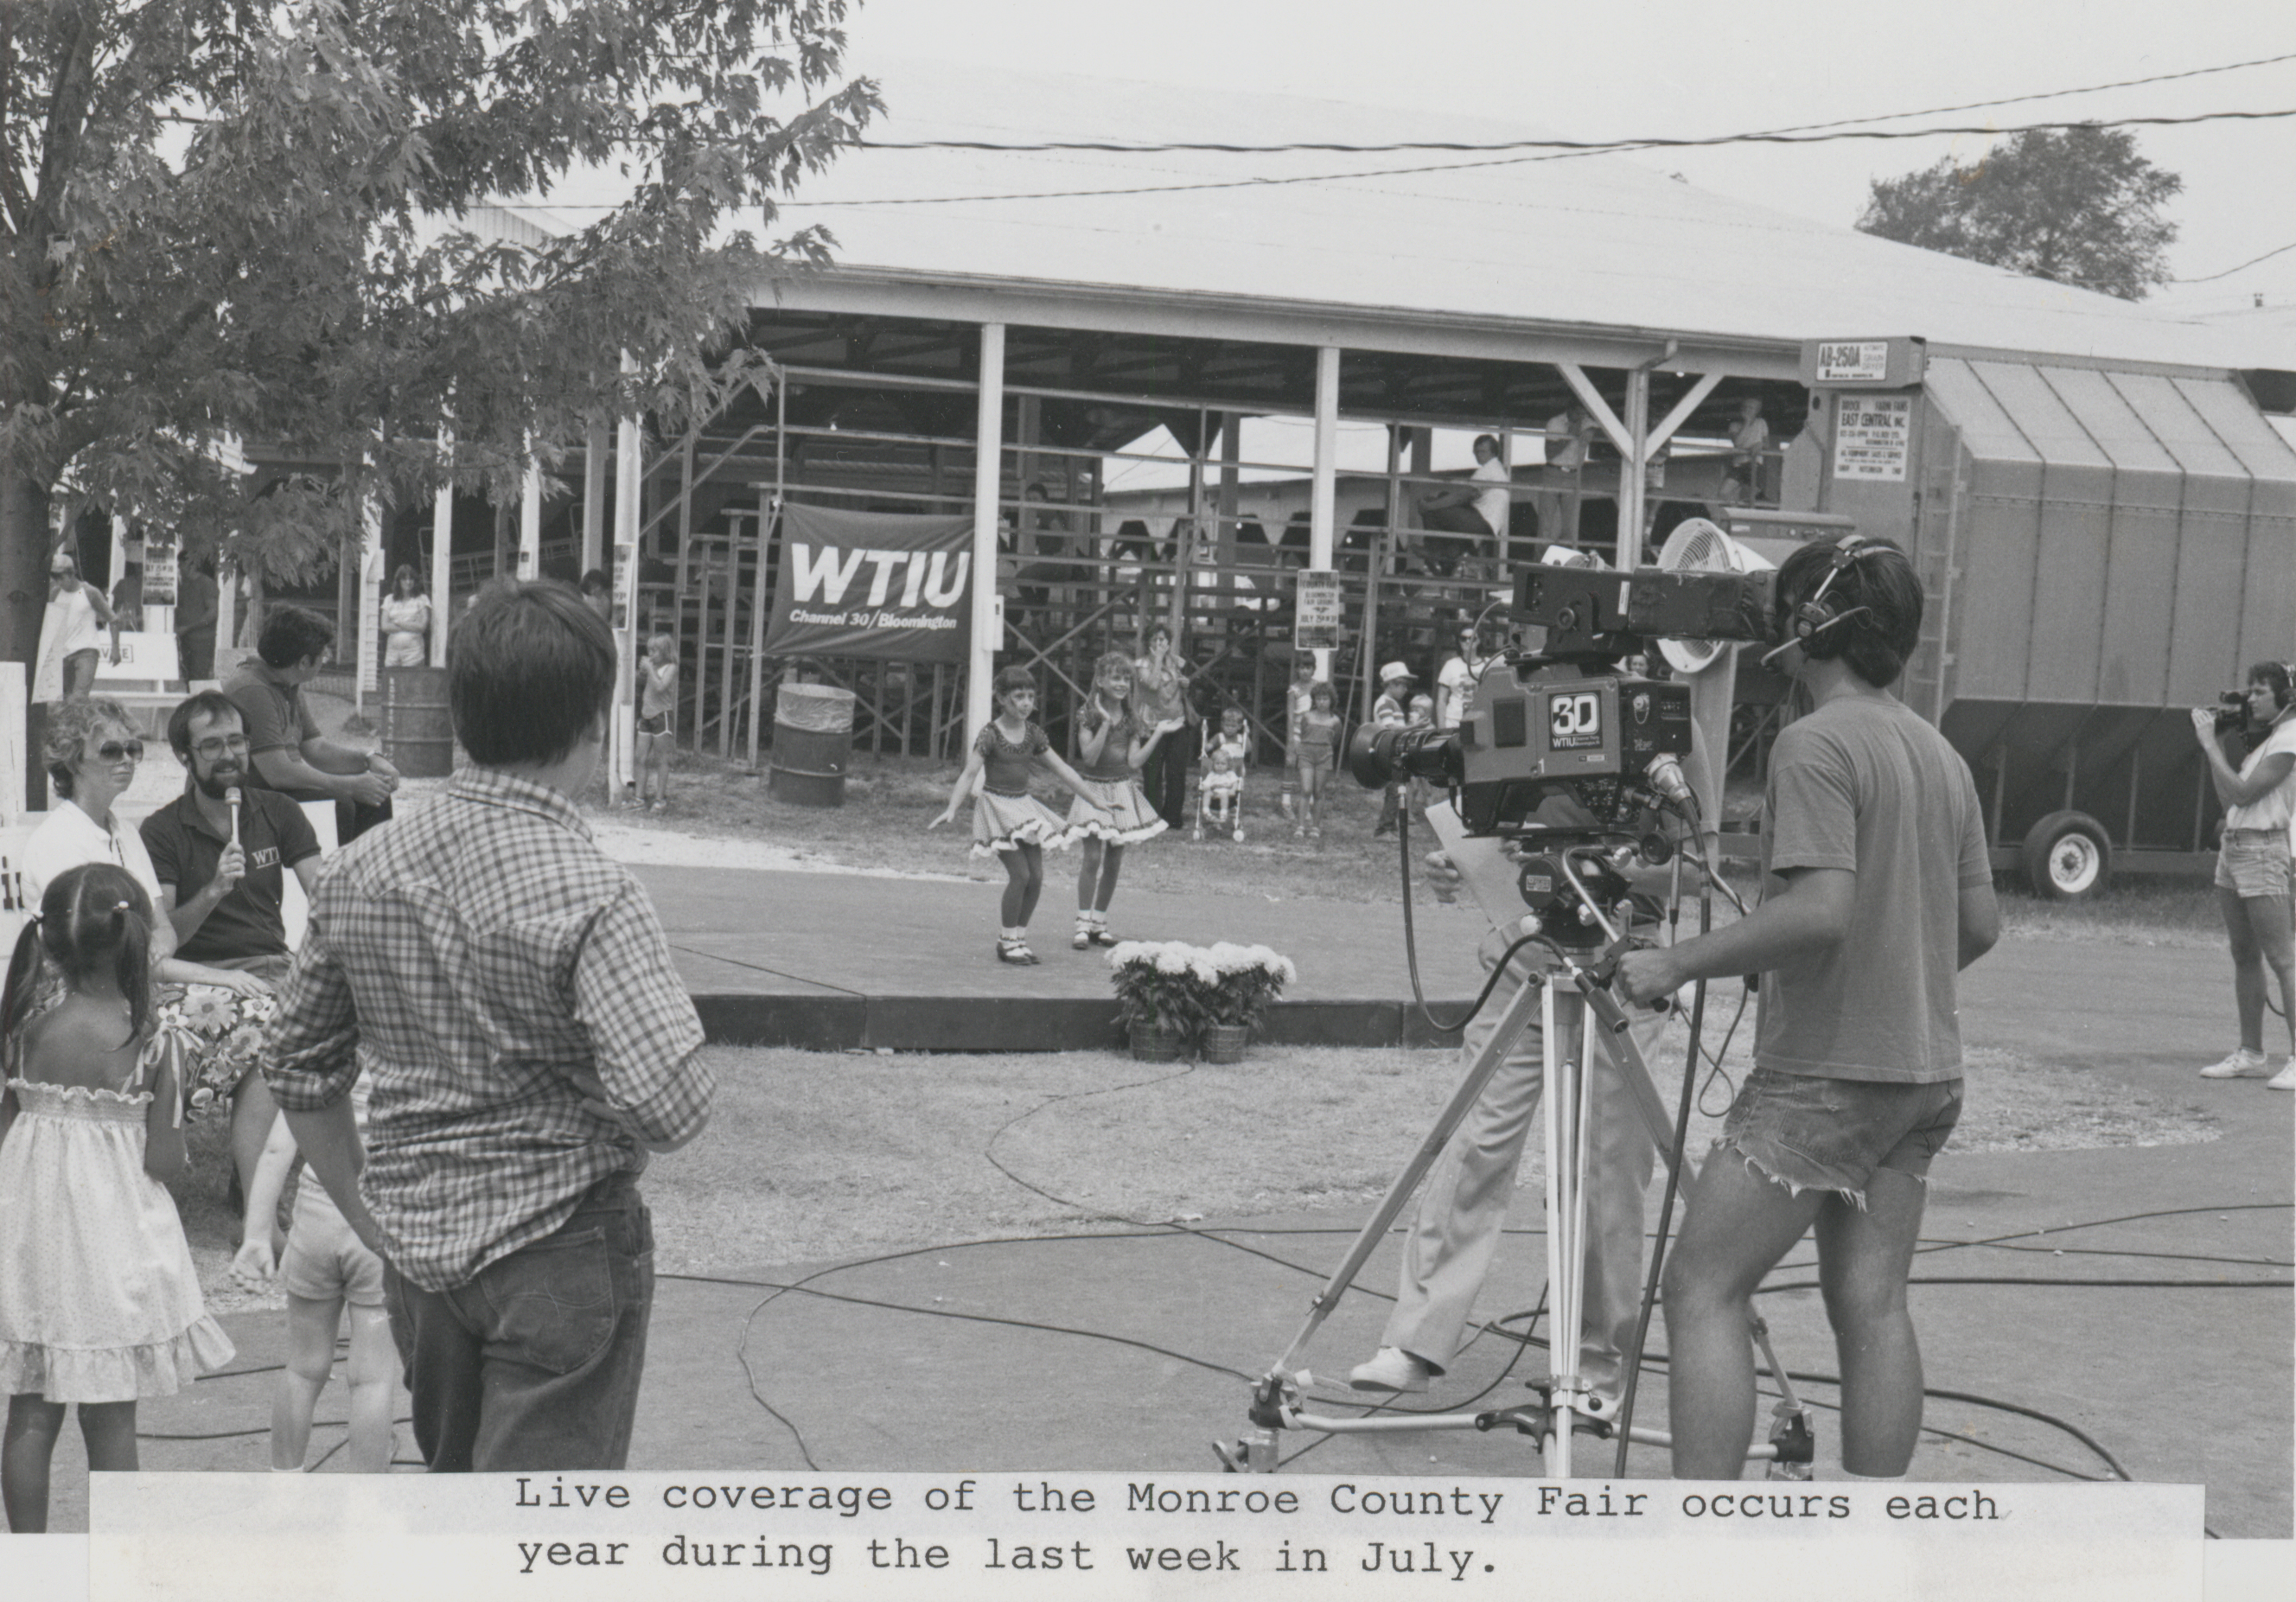 WTIU at the 1980 Monroe County Fair